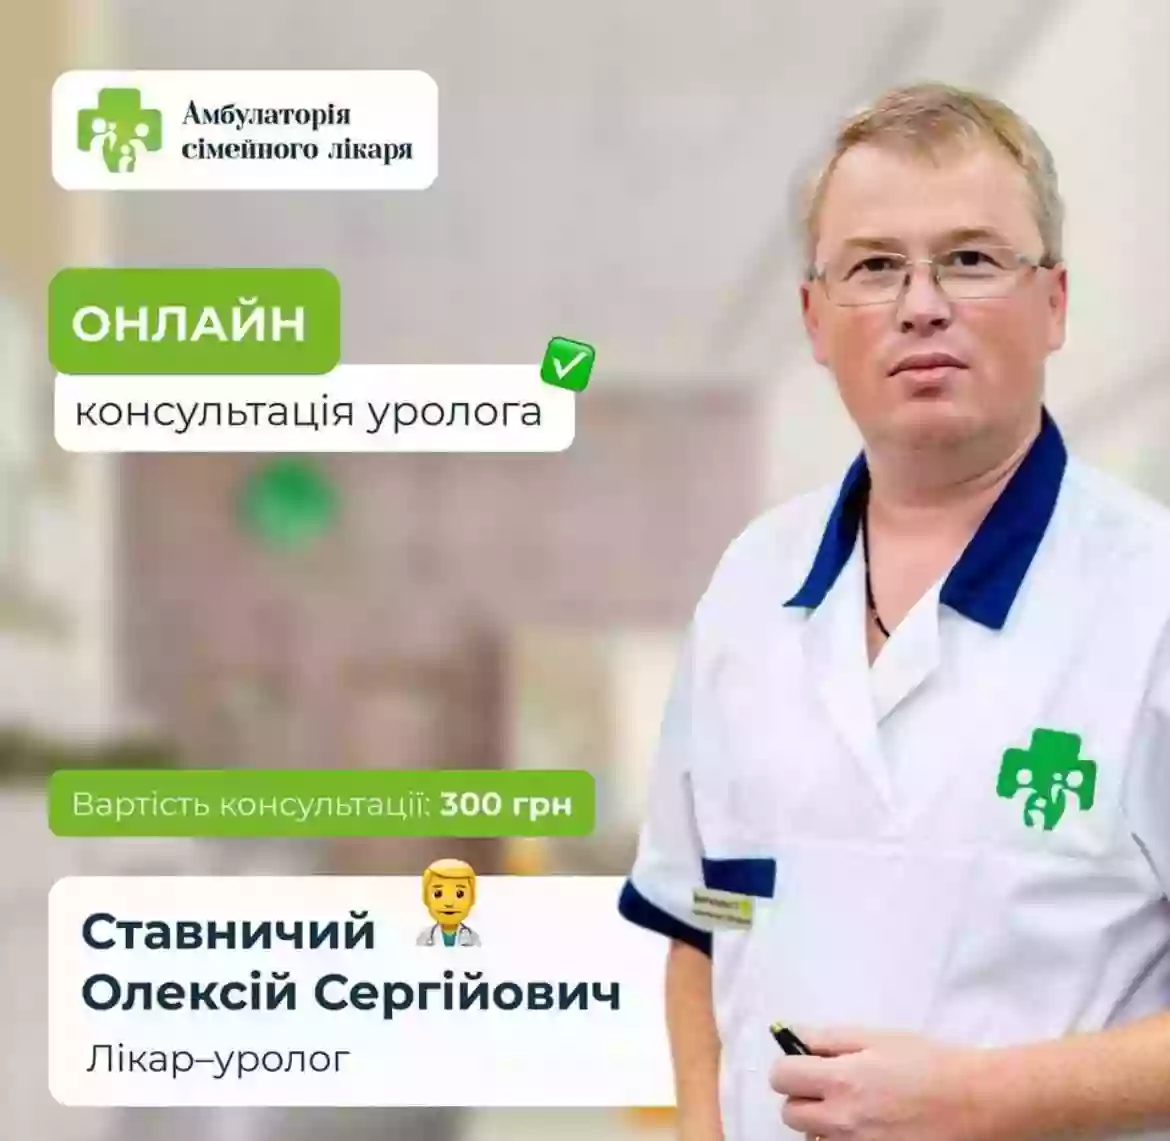 Уролог Ставничий Алексей Сергеевич